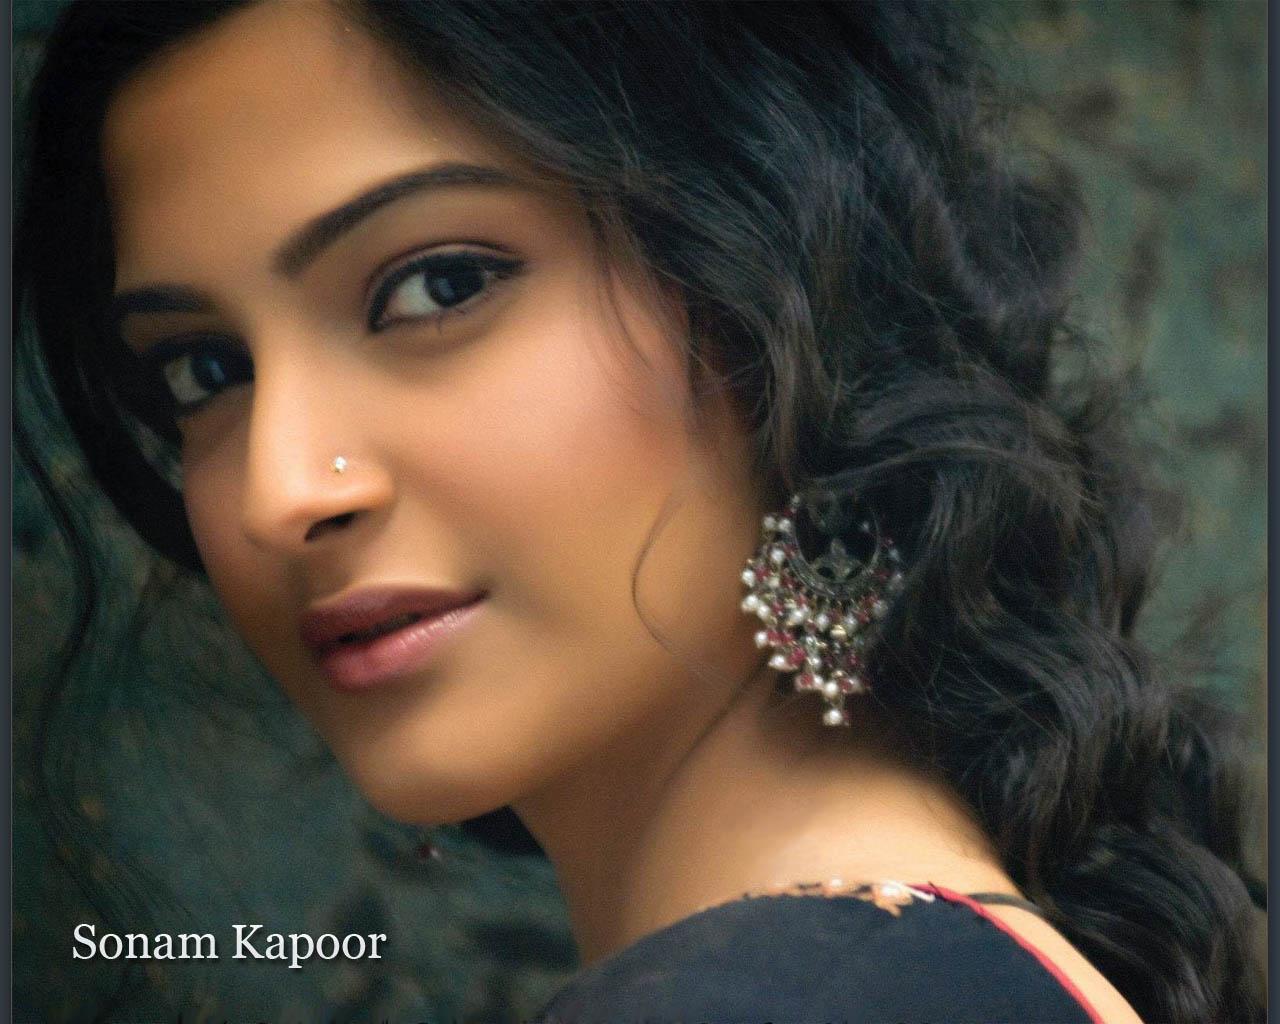 Sonam Kapoor Hot Picture, Photo Gallery & Wallpaper: Sonam